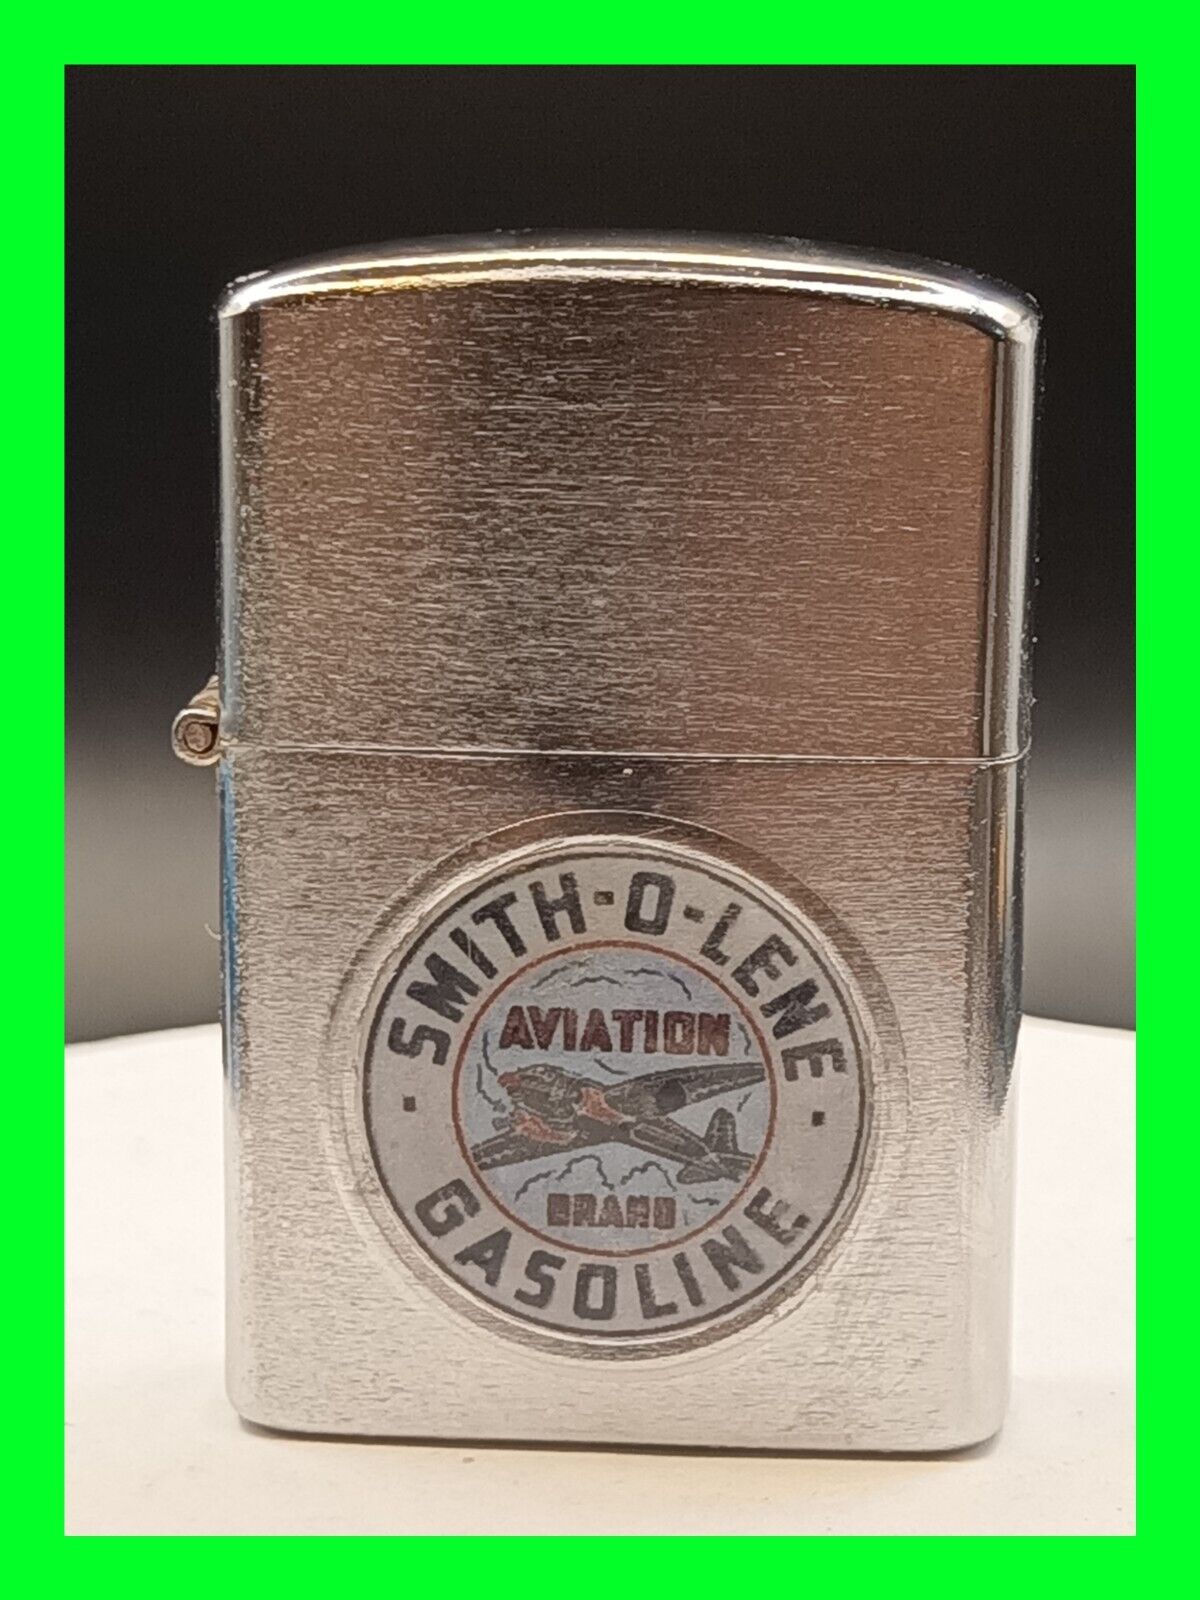 Smith-o-lene Gasoline - Unfired Vintage Petrol Cigarette Lighter